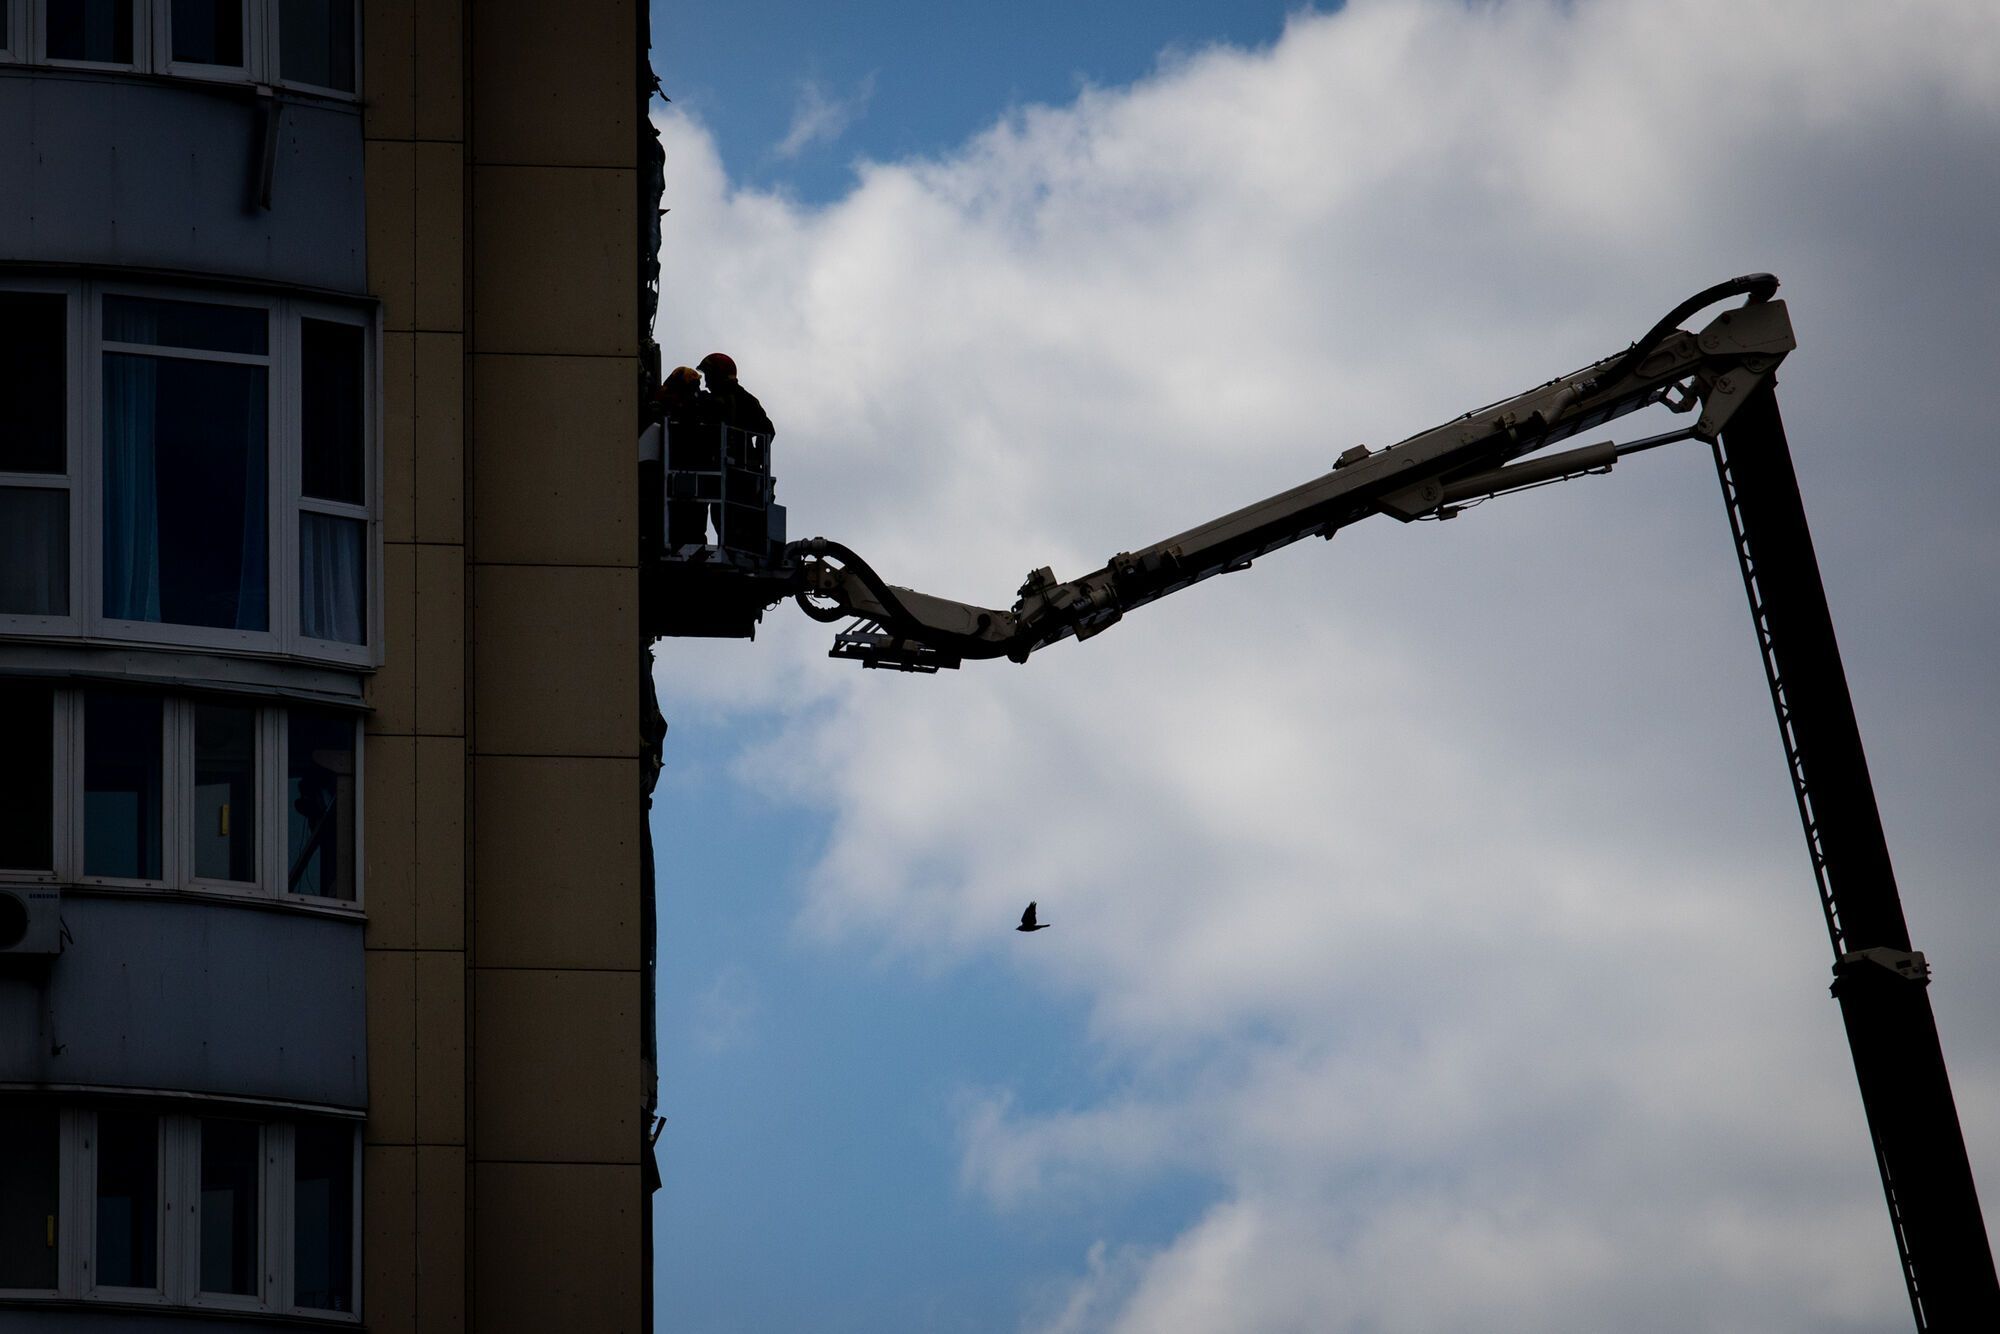 Спасатели завершили разбор аварийных конструкций многоэтажки в Киеве: на очереди восстановление дома. Фото